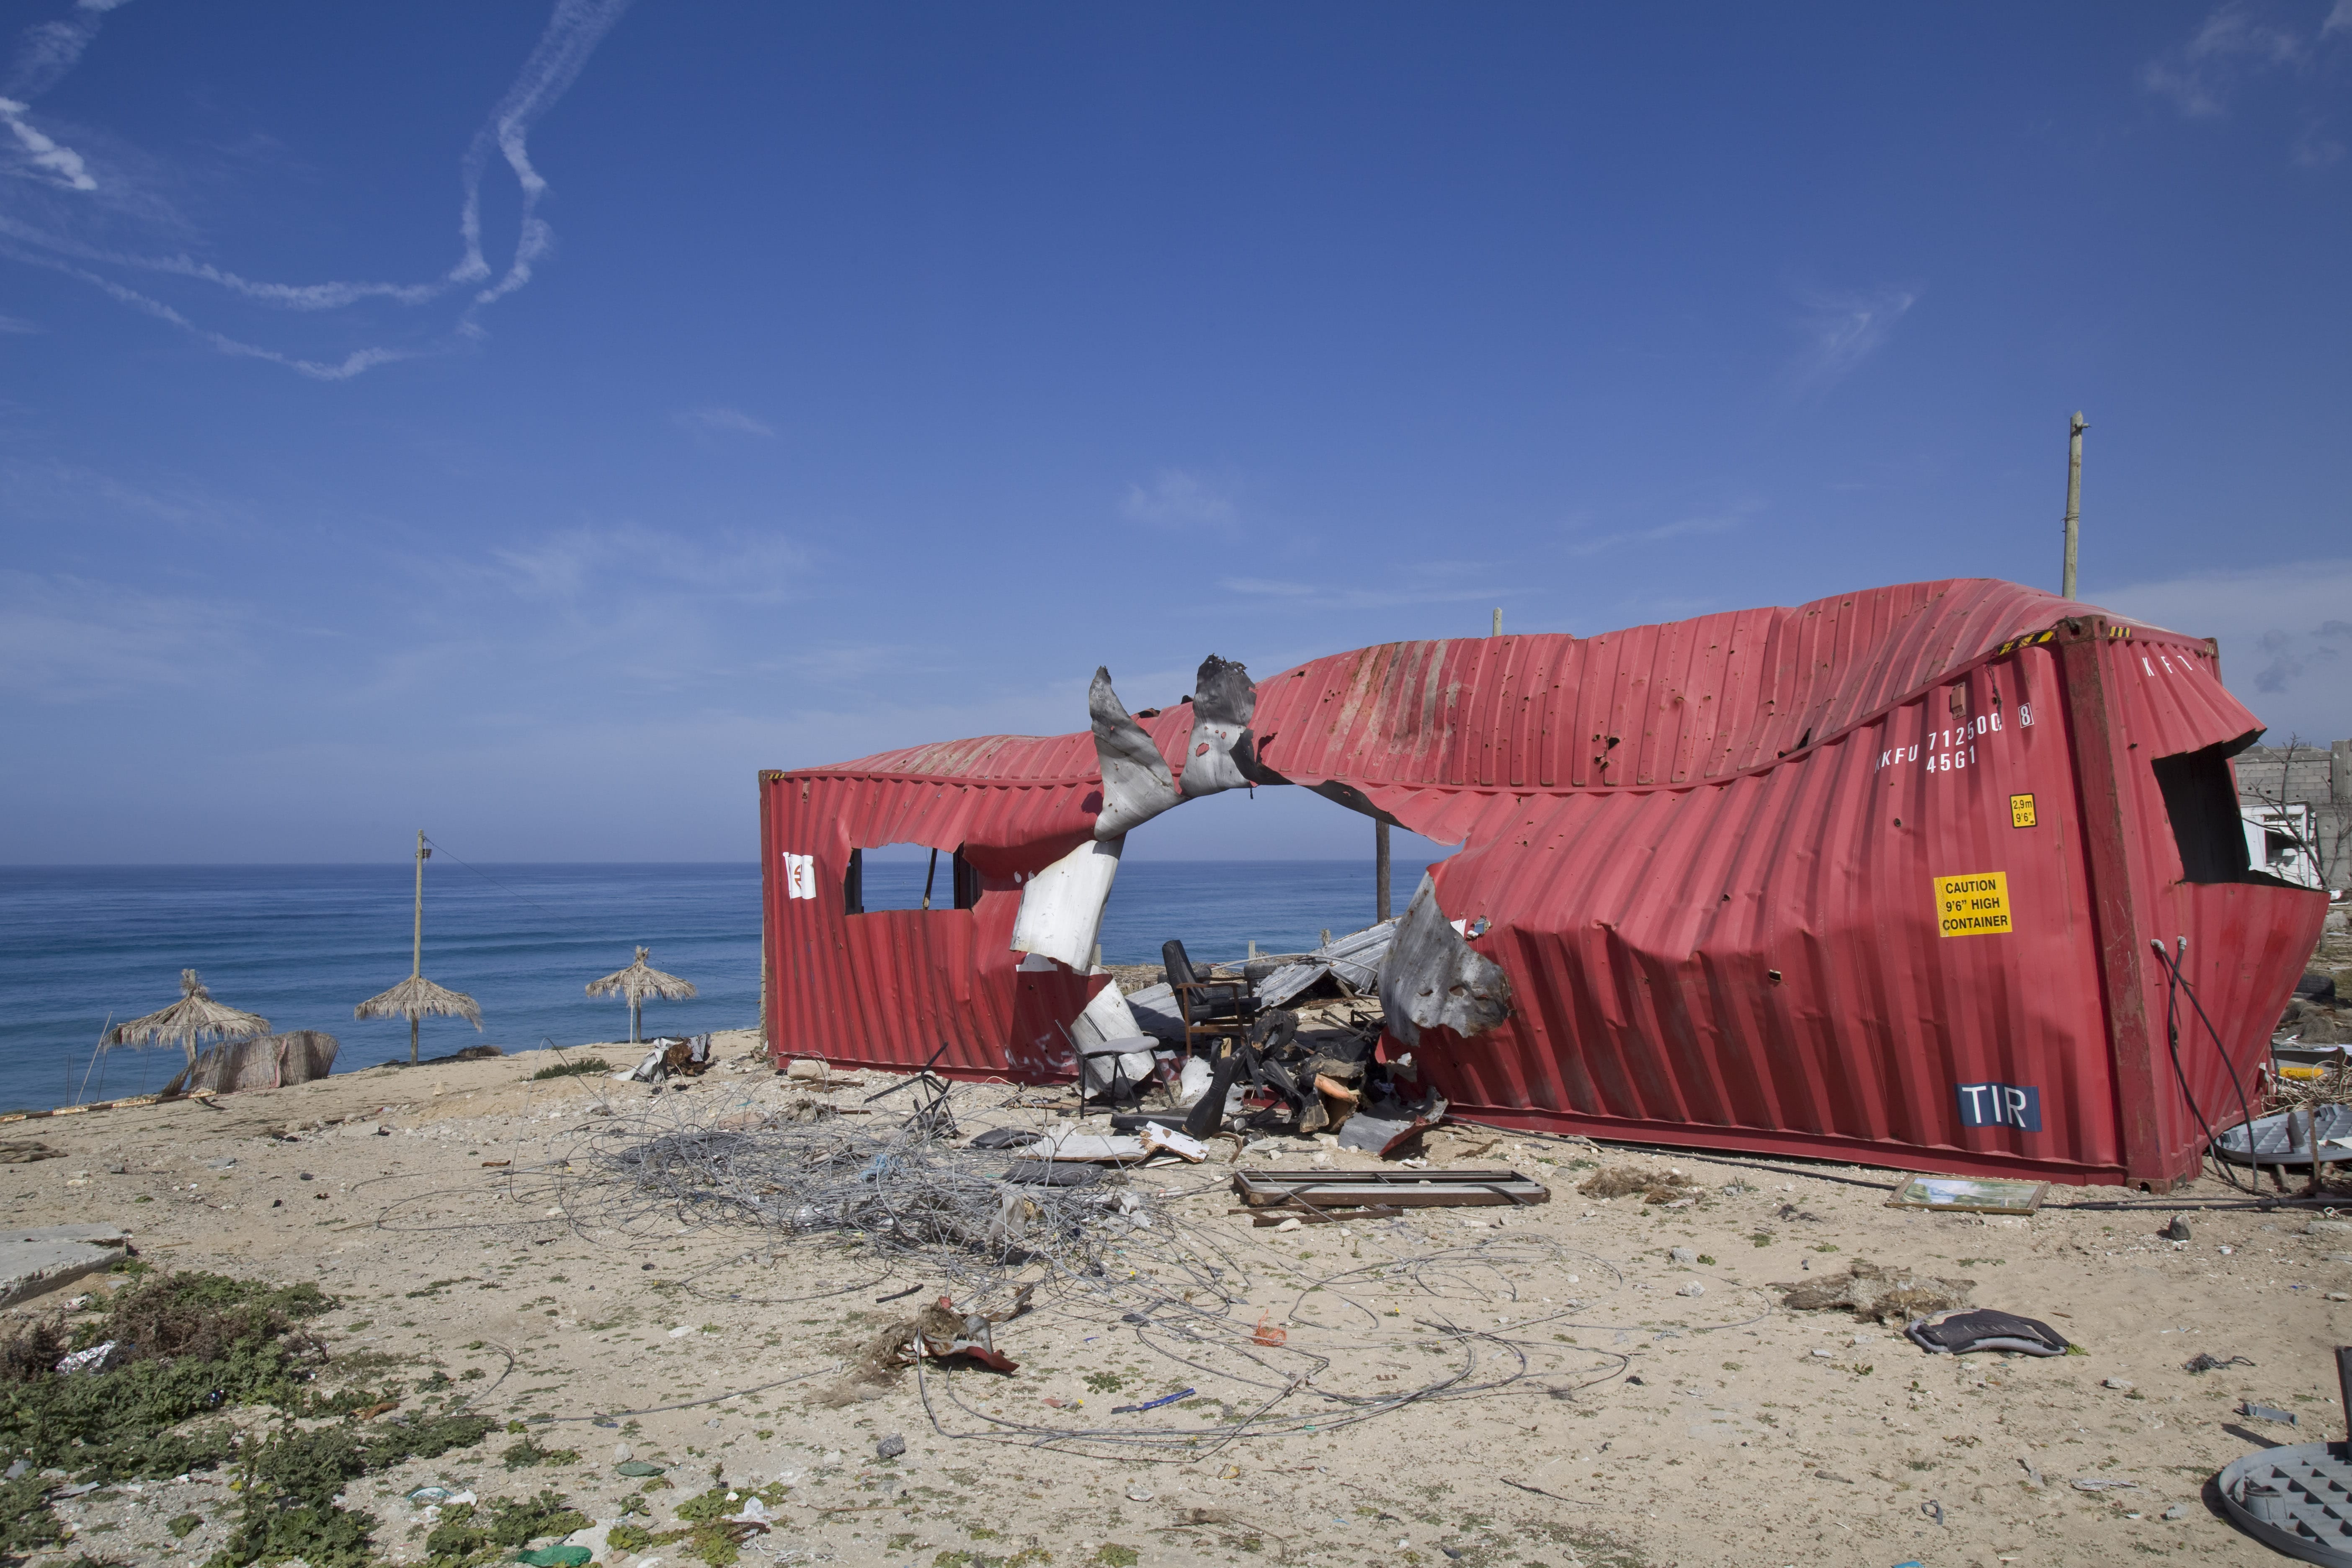 Container détruit sur une plage au Nord de Gaza. © Kai Wiedenhöfer for the Carmignac Gestion photojournalism Award